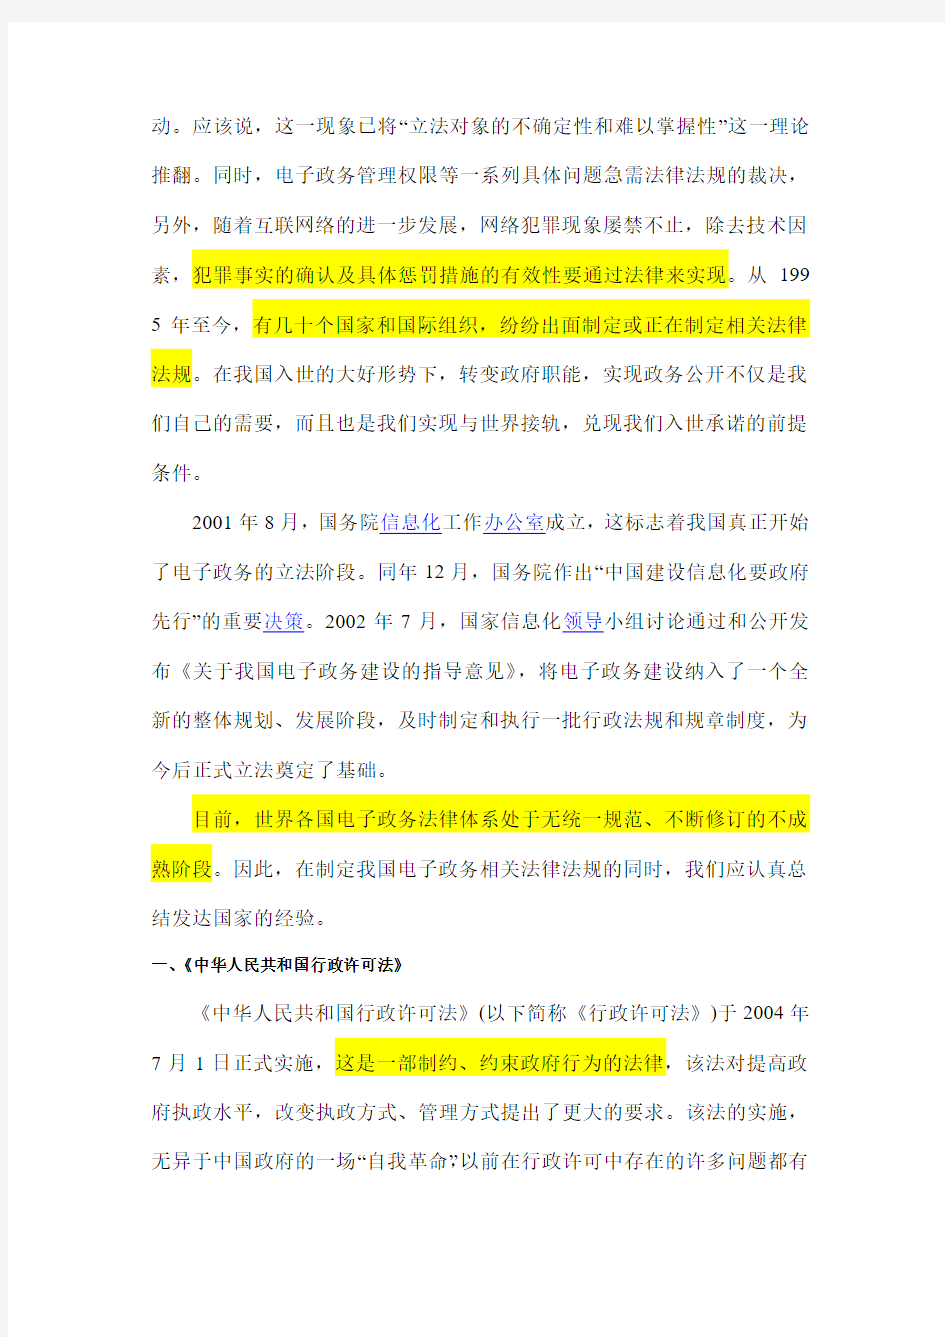 中国电子政务发展现状研究白皮书之“电子政务法律法规的建设”